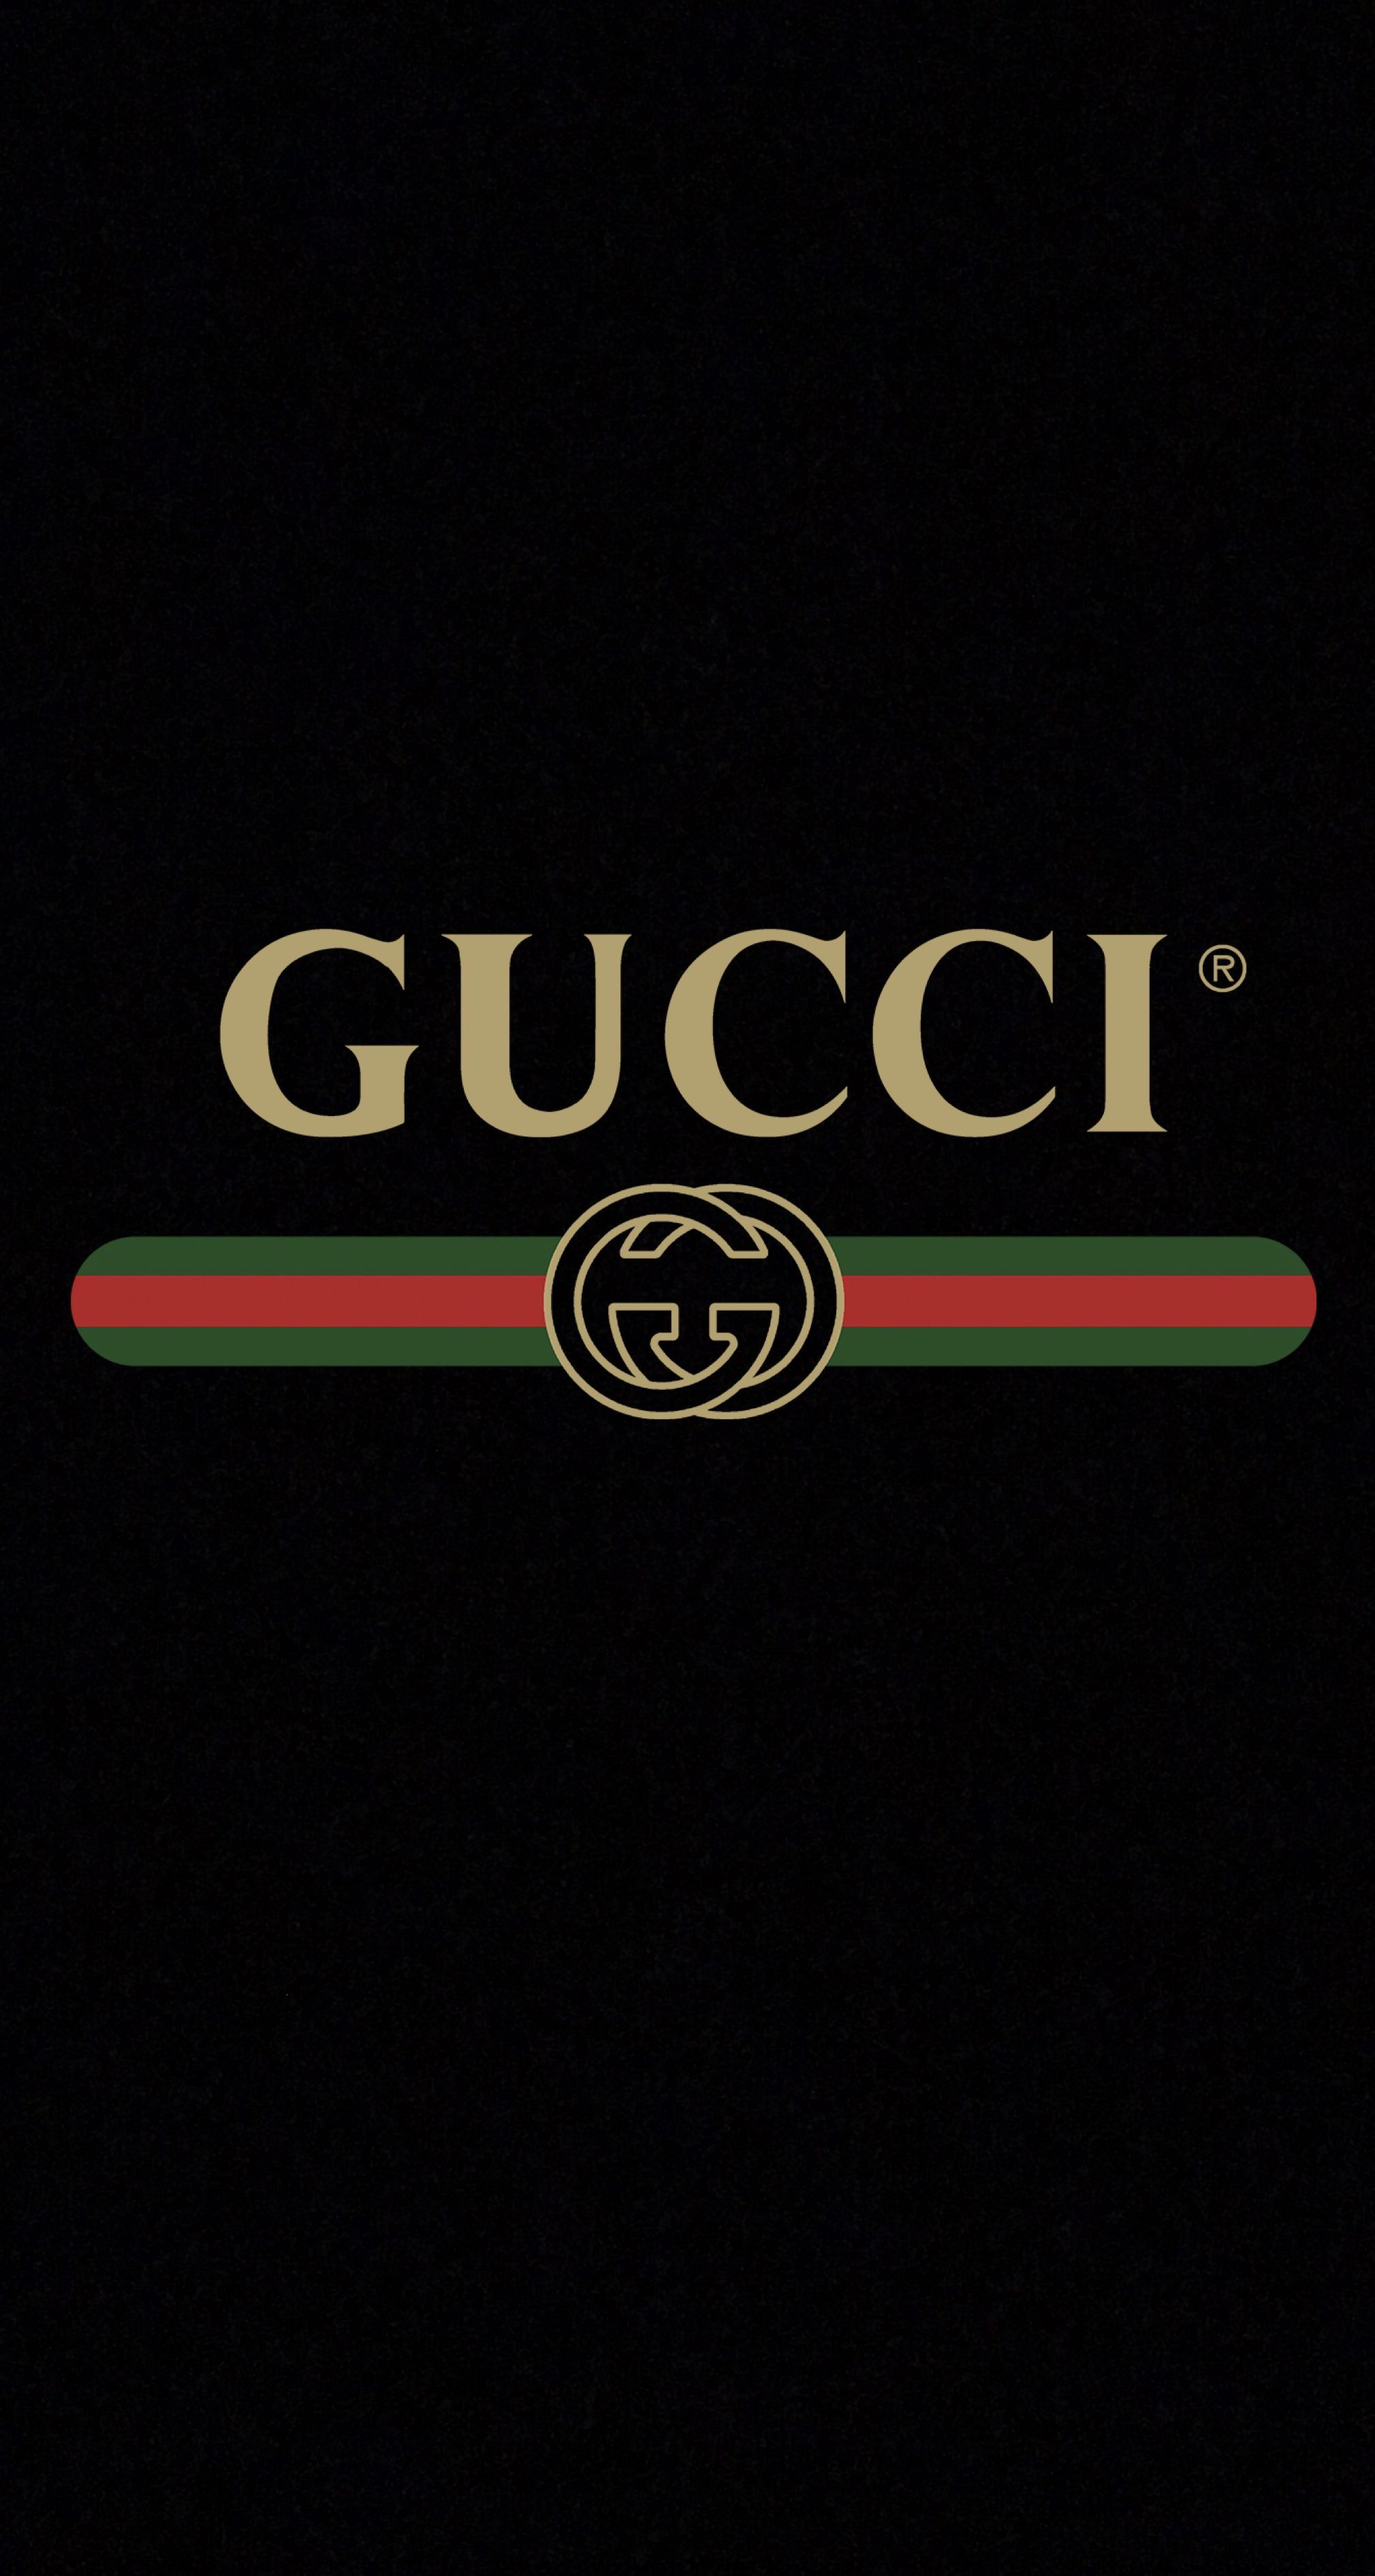 49+] Gucci Wallpapers - WallpaperSafari